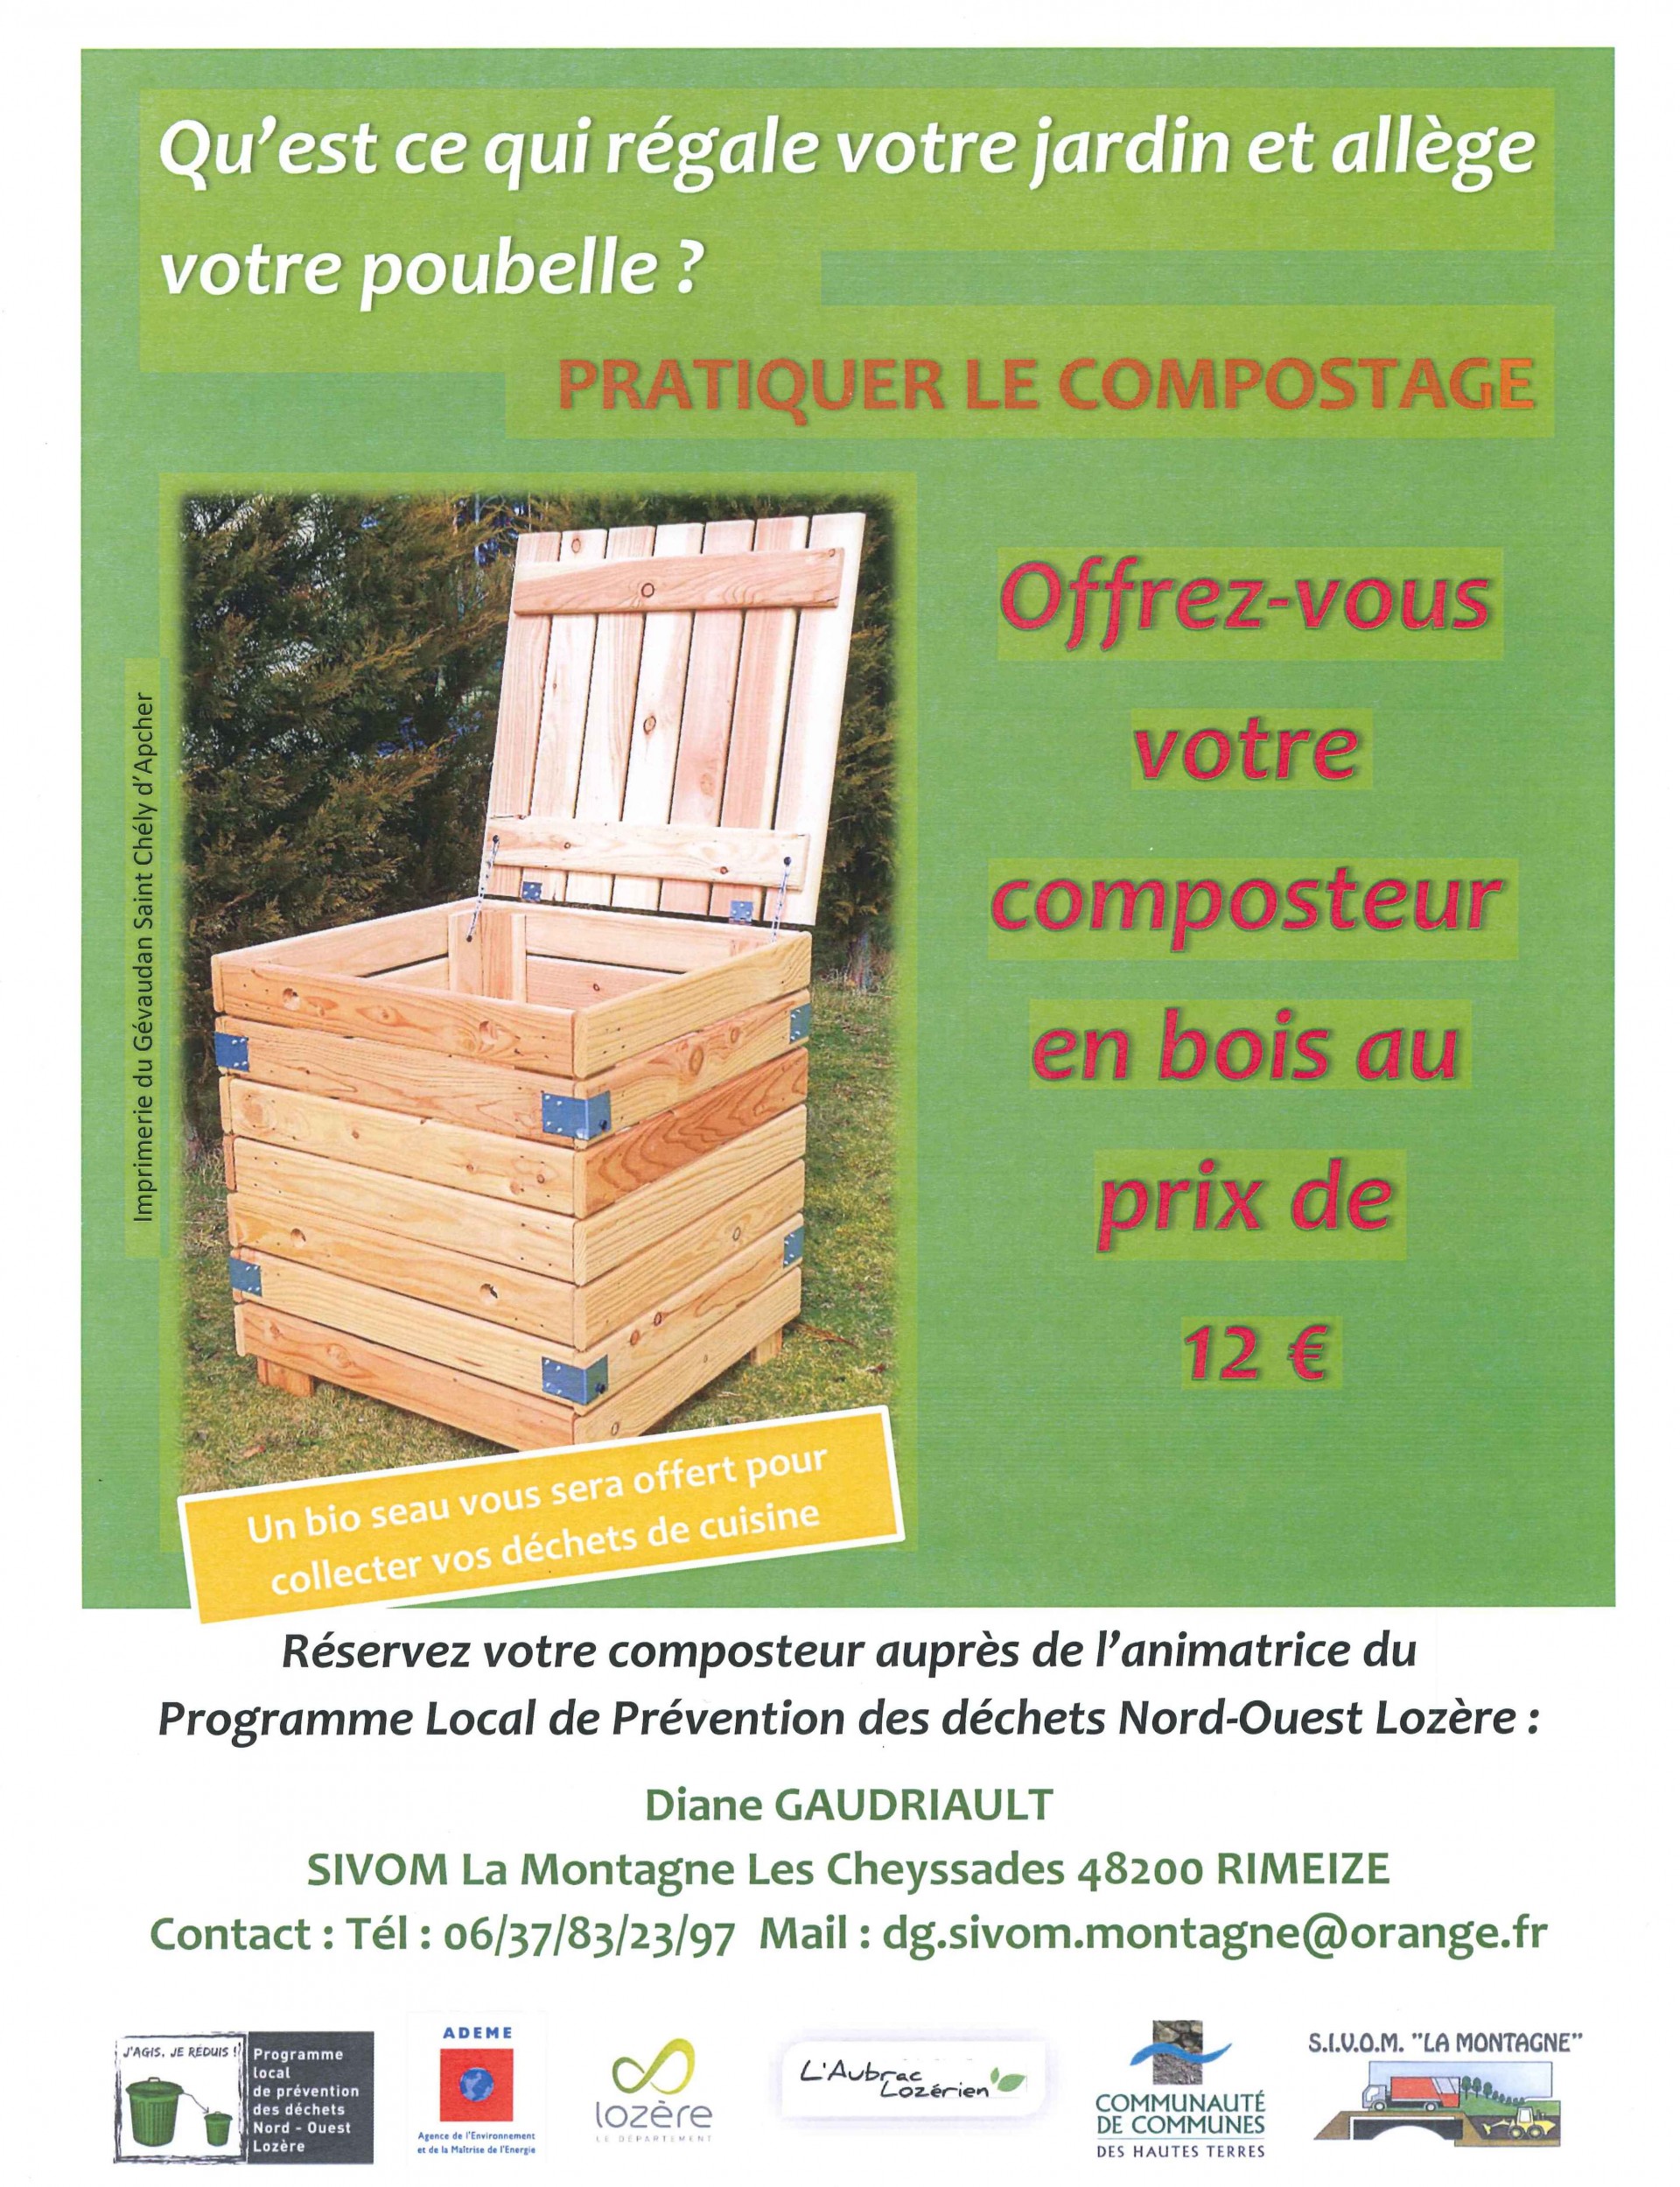 distribution de composteurs en bois